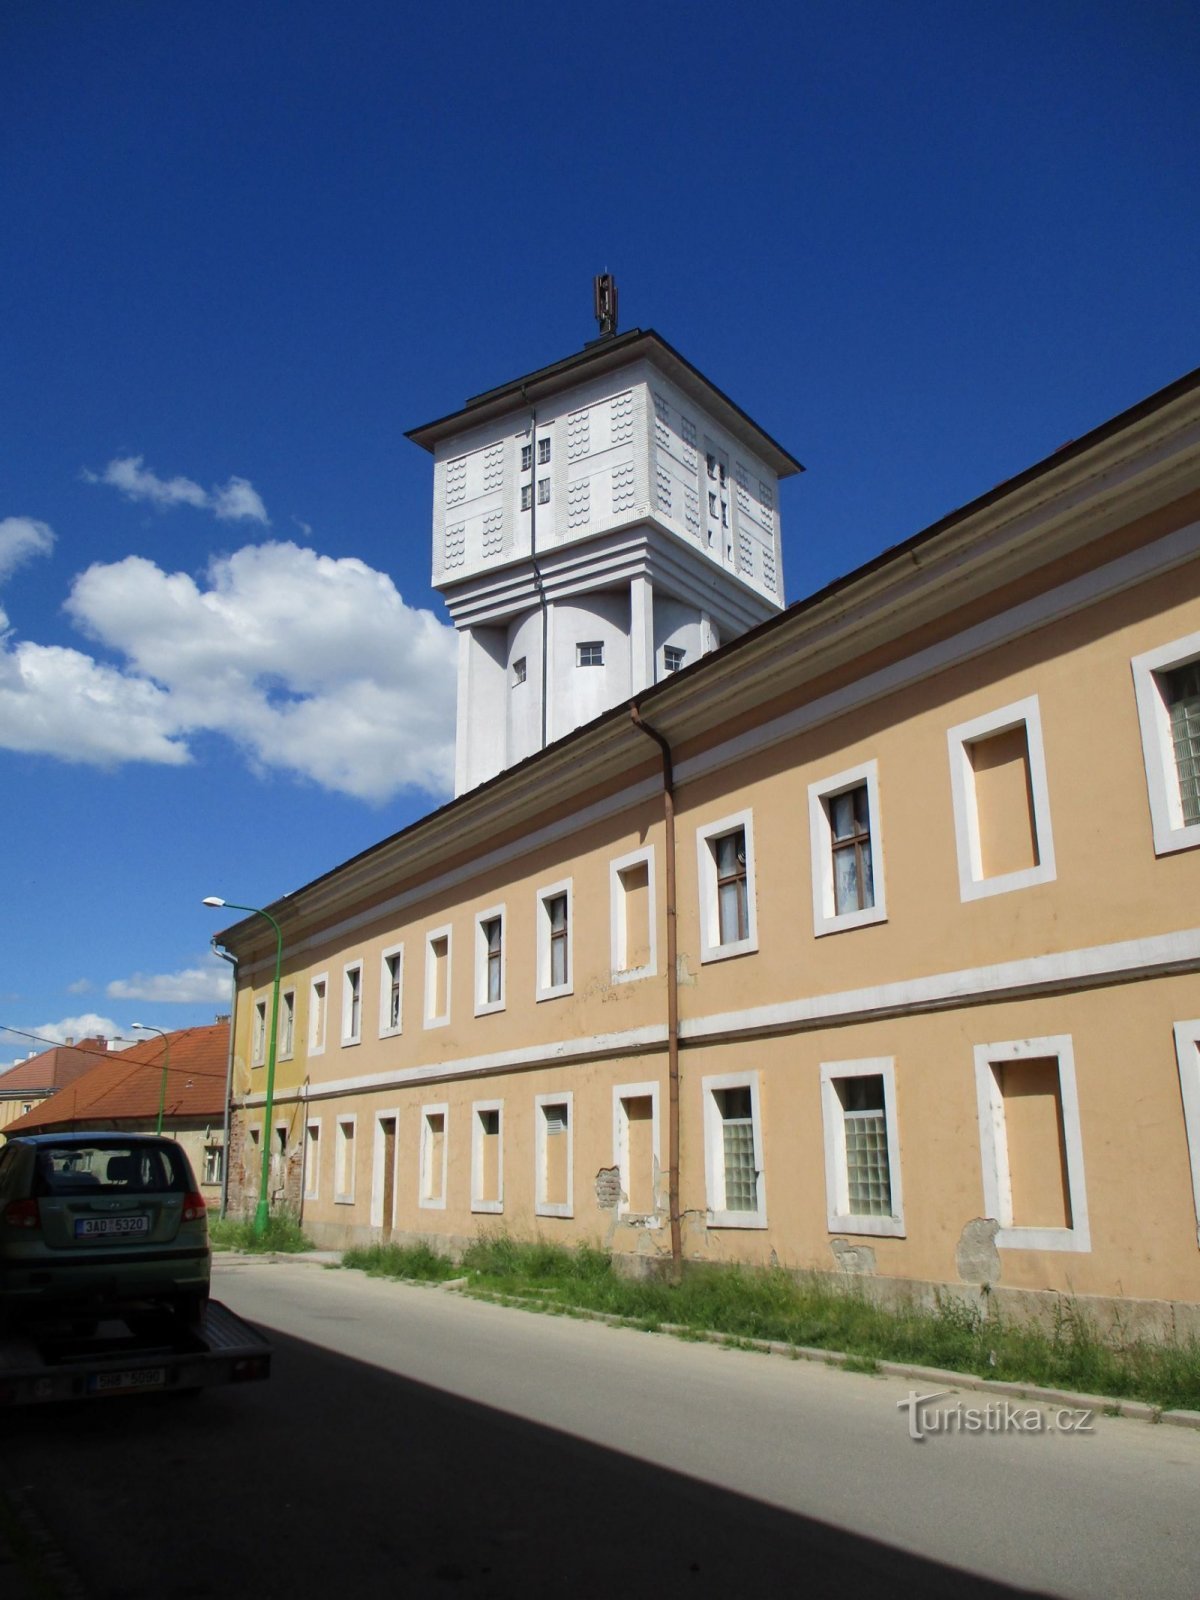 Tháp nước tại nhà máy bia cũ (Josefov, 1,6,2020/XNUMX/XNUMX)